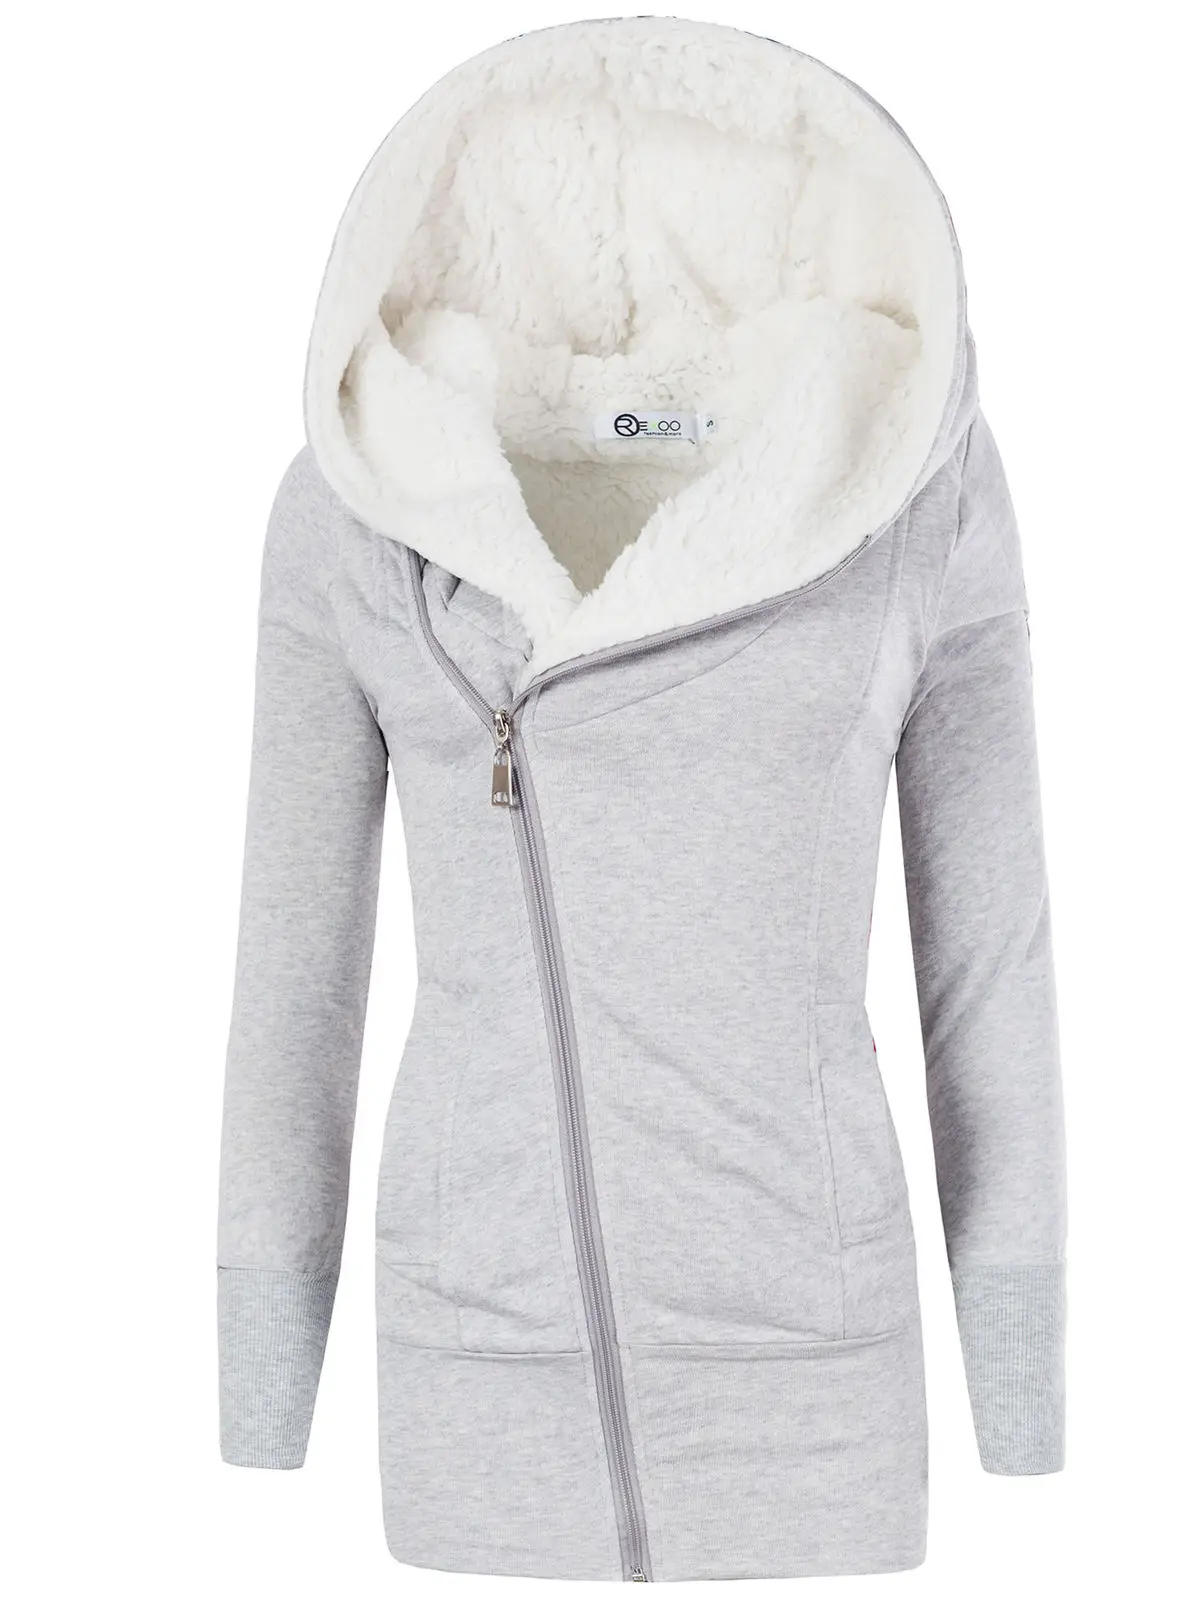 ZOGAA, зимние женские куртки, хлопковое пальто с подкладкой, длинные тонкие парки с капюшоном размера плюс, теплая шерстяная куртка, пальто, одежда для женщин